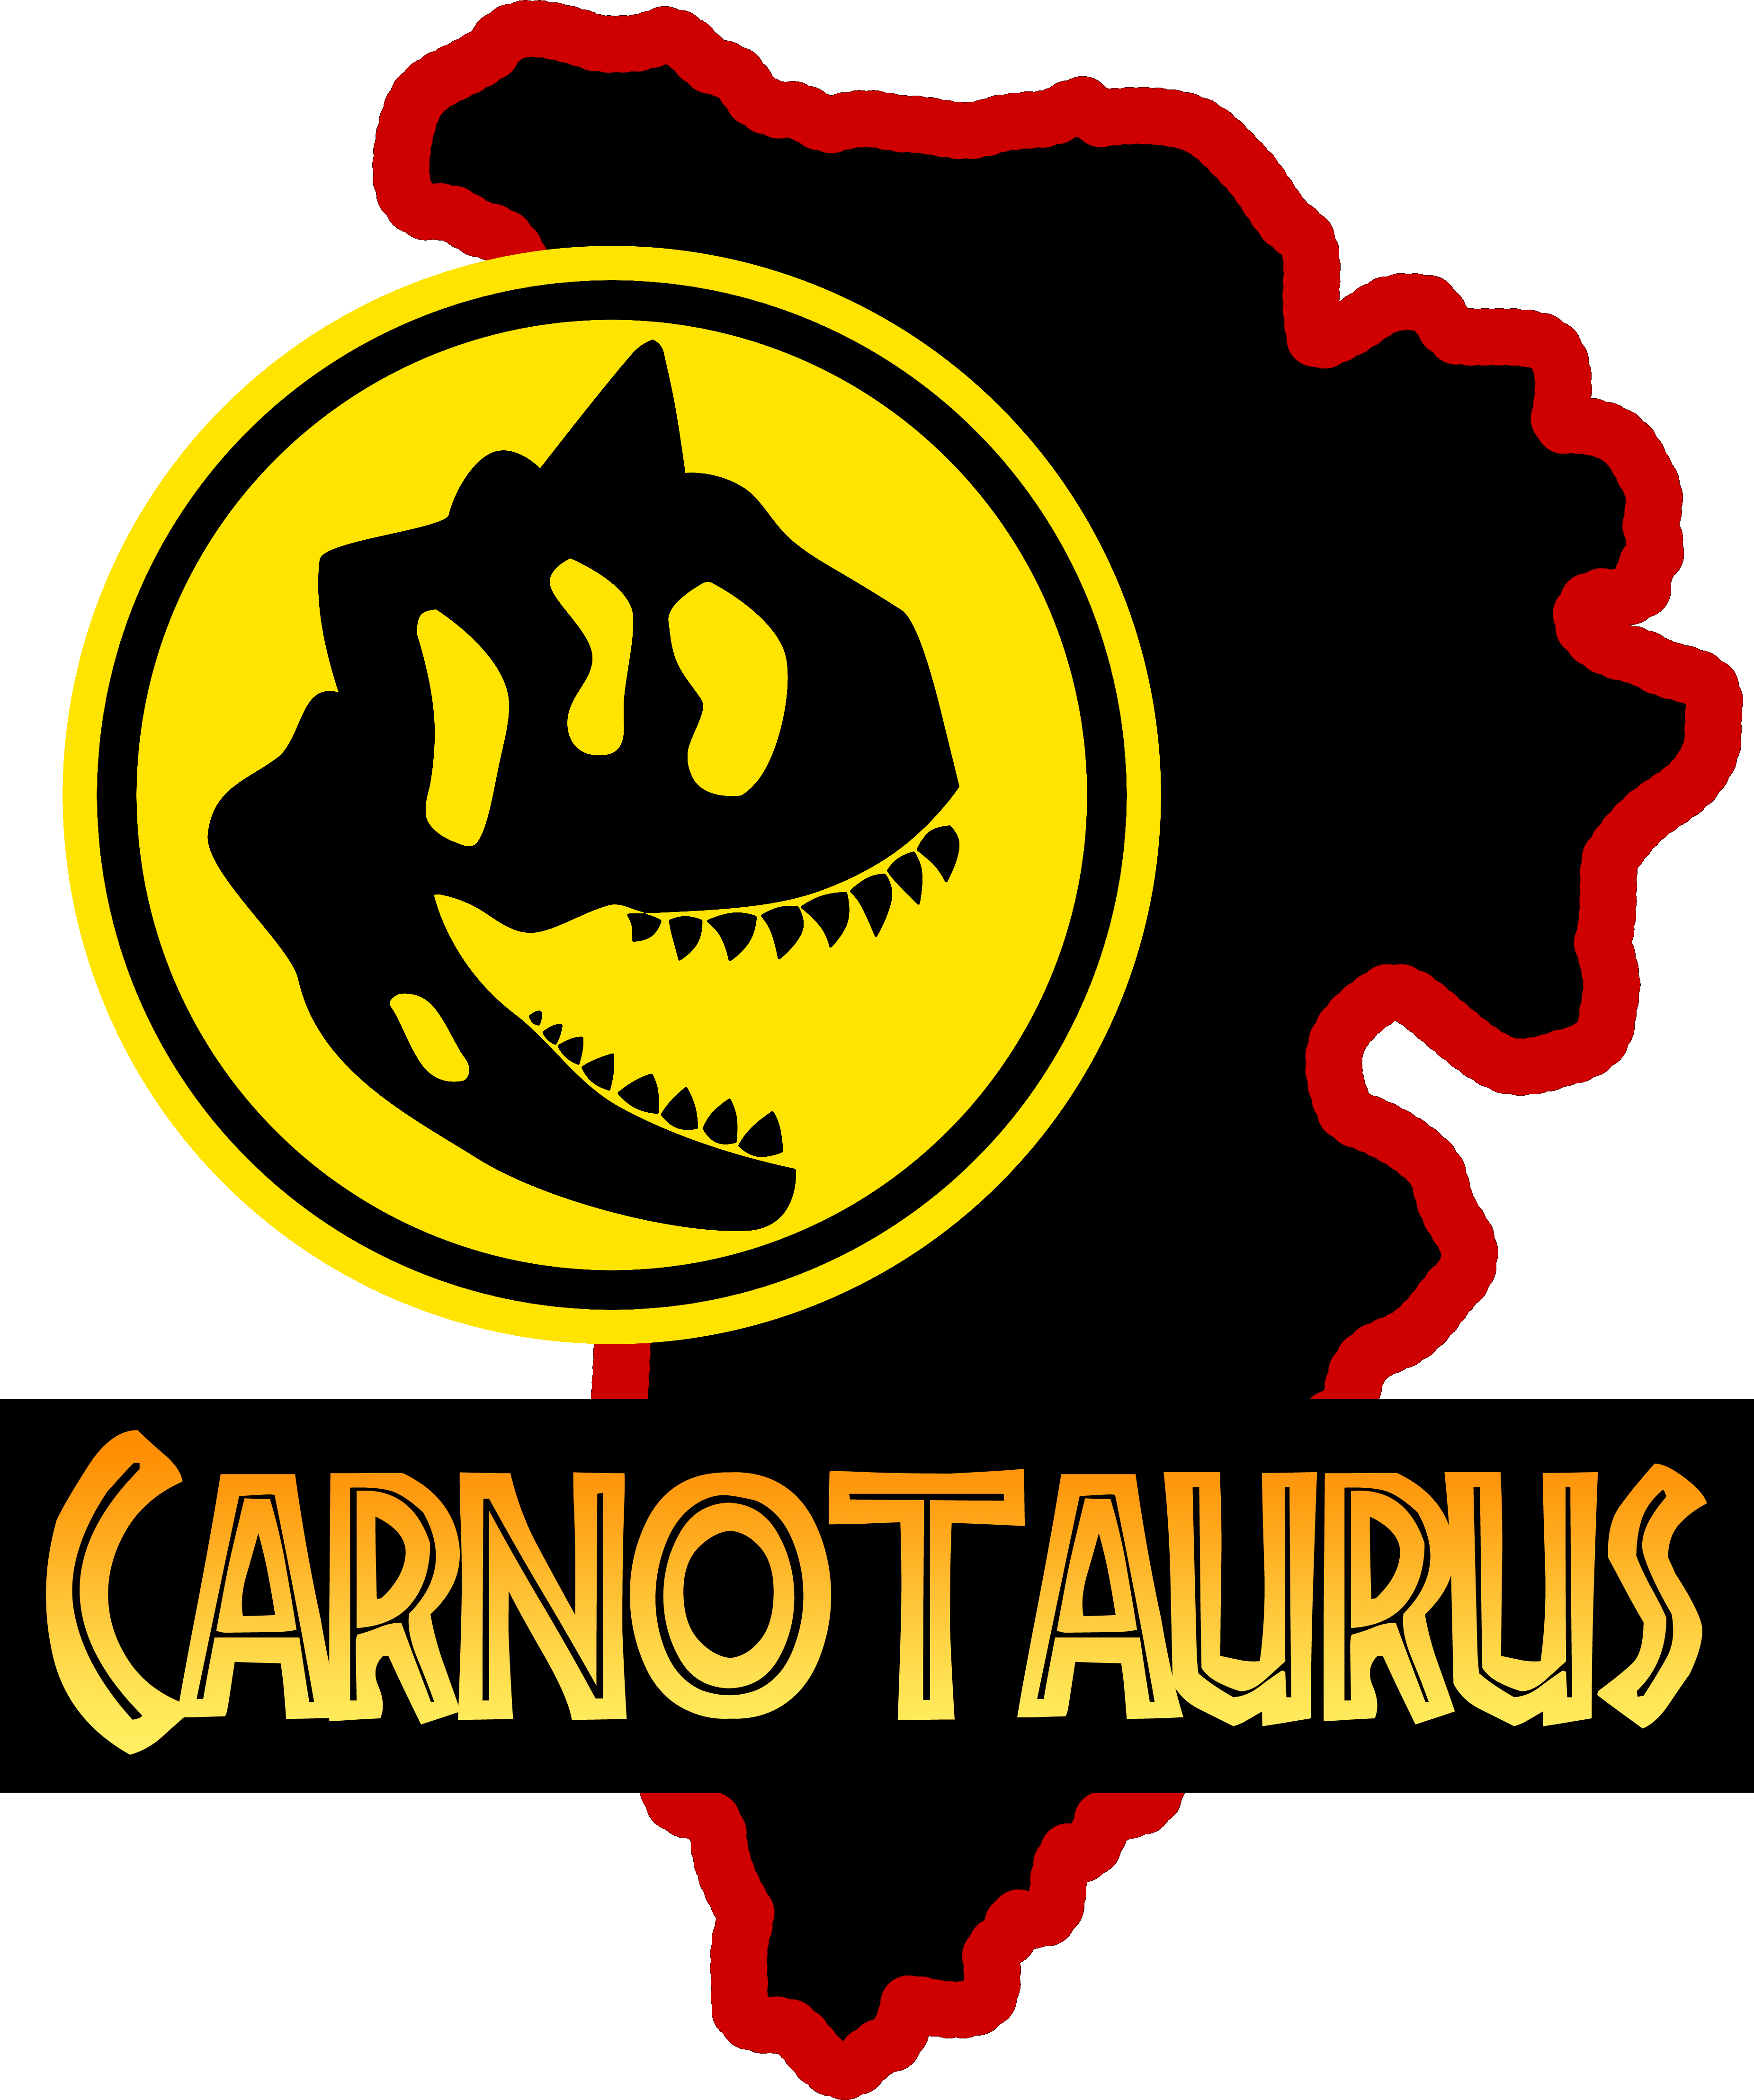 carnotaurus jurassic park logo by OniPunisher on DeviantArt